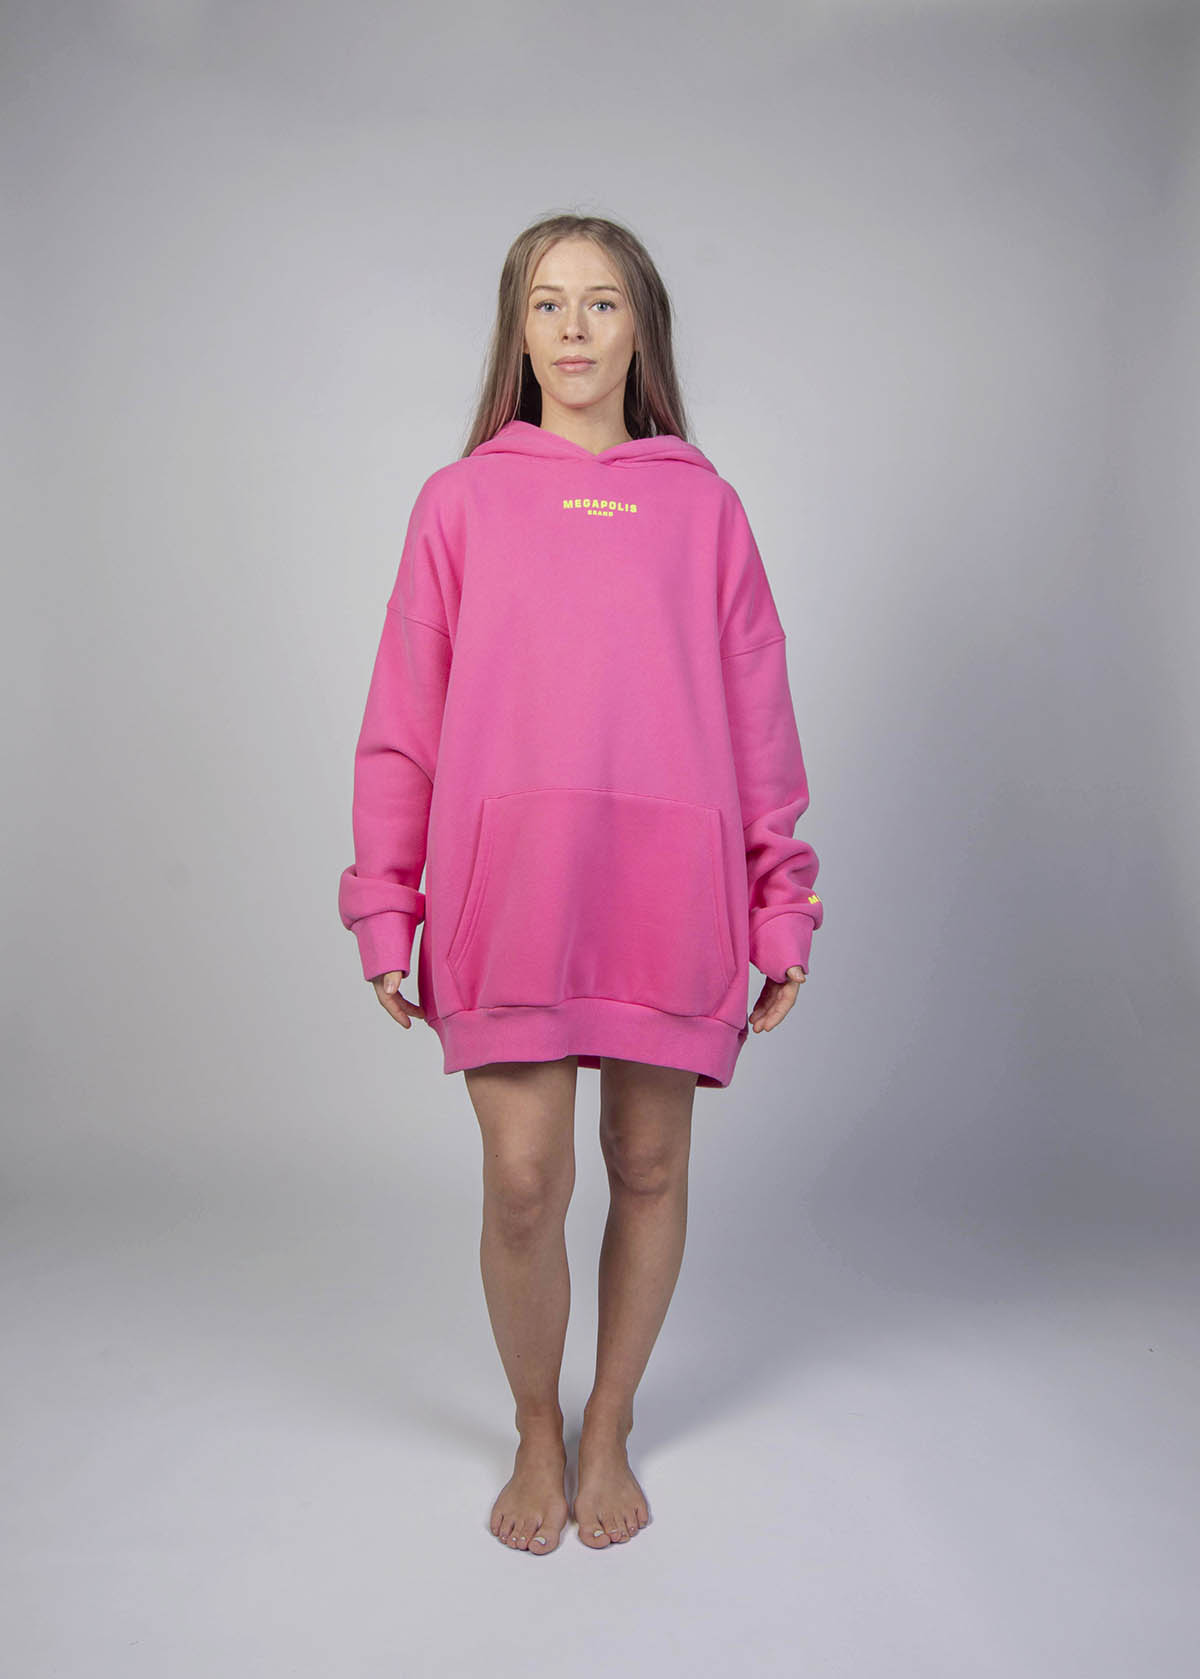 IMGP8803-mod-pink-hoodie